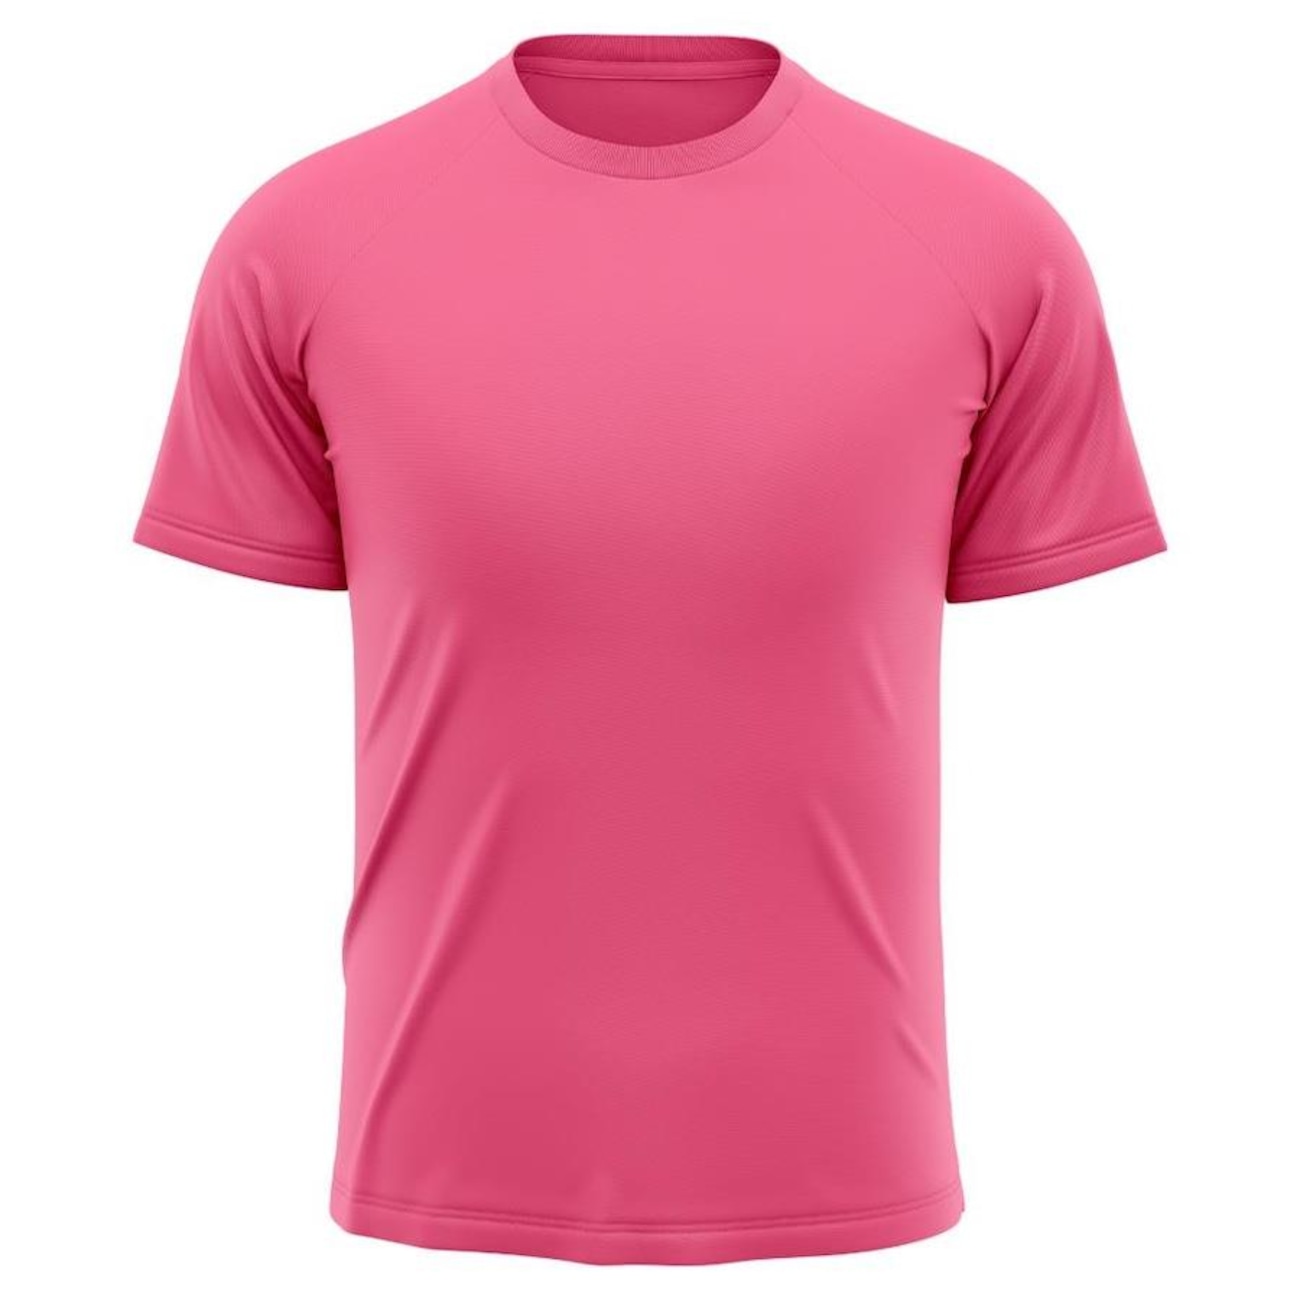 Camiseta Whats Wear Raglan Dry Fit com Proteção Solar UV - Masculina